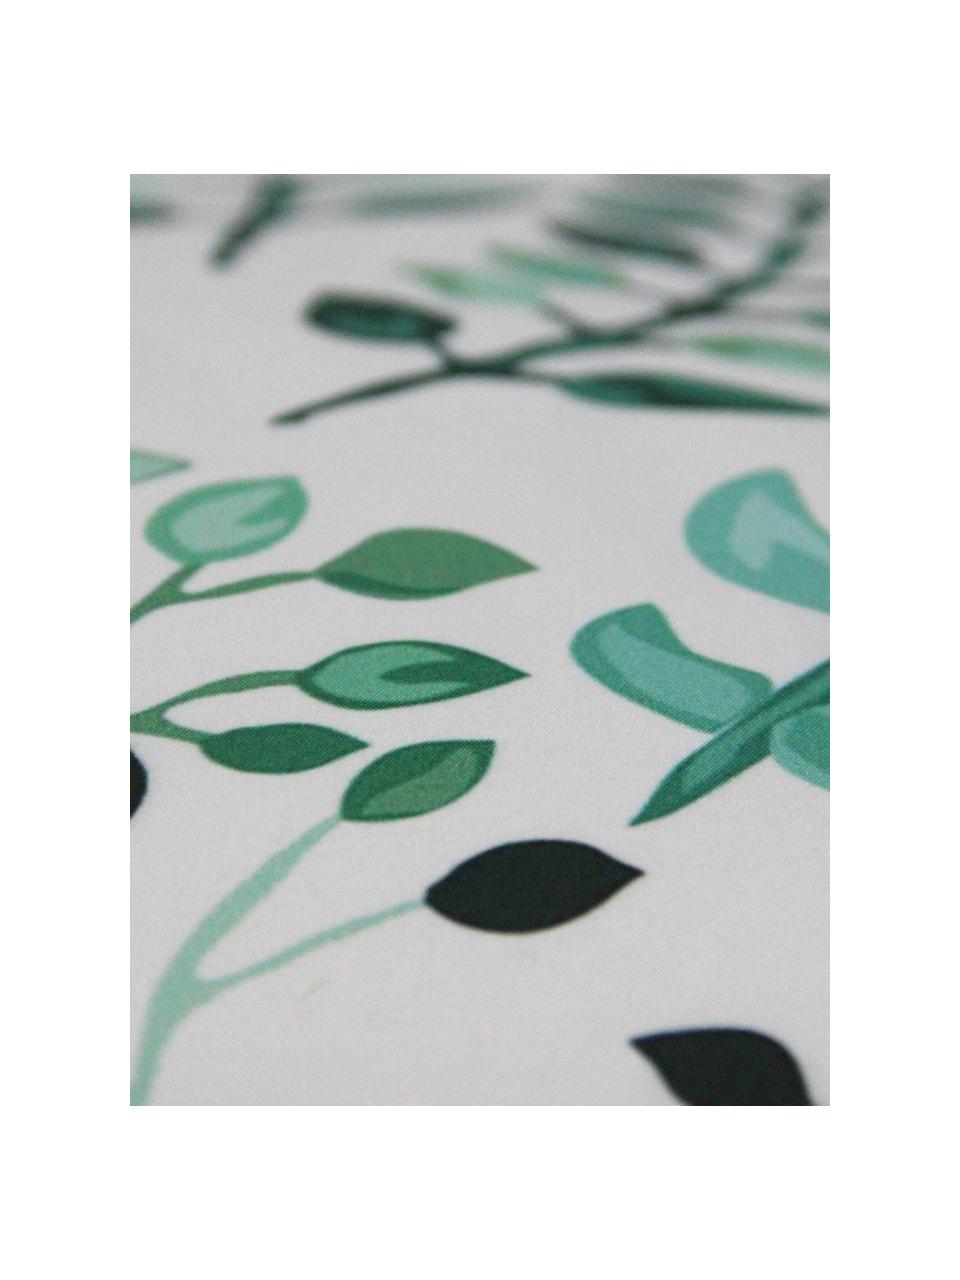 Kussenhoes Leaves met bladpatroon, Polyester, Wit, groentinten, 40 x 40 cm